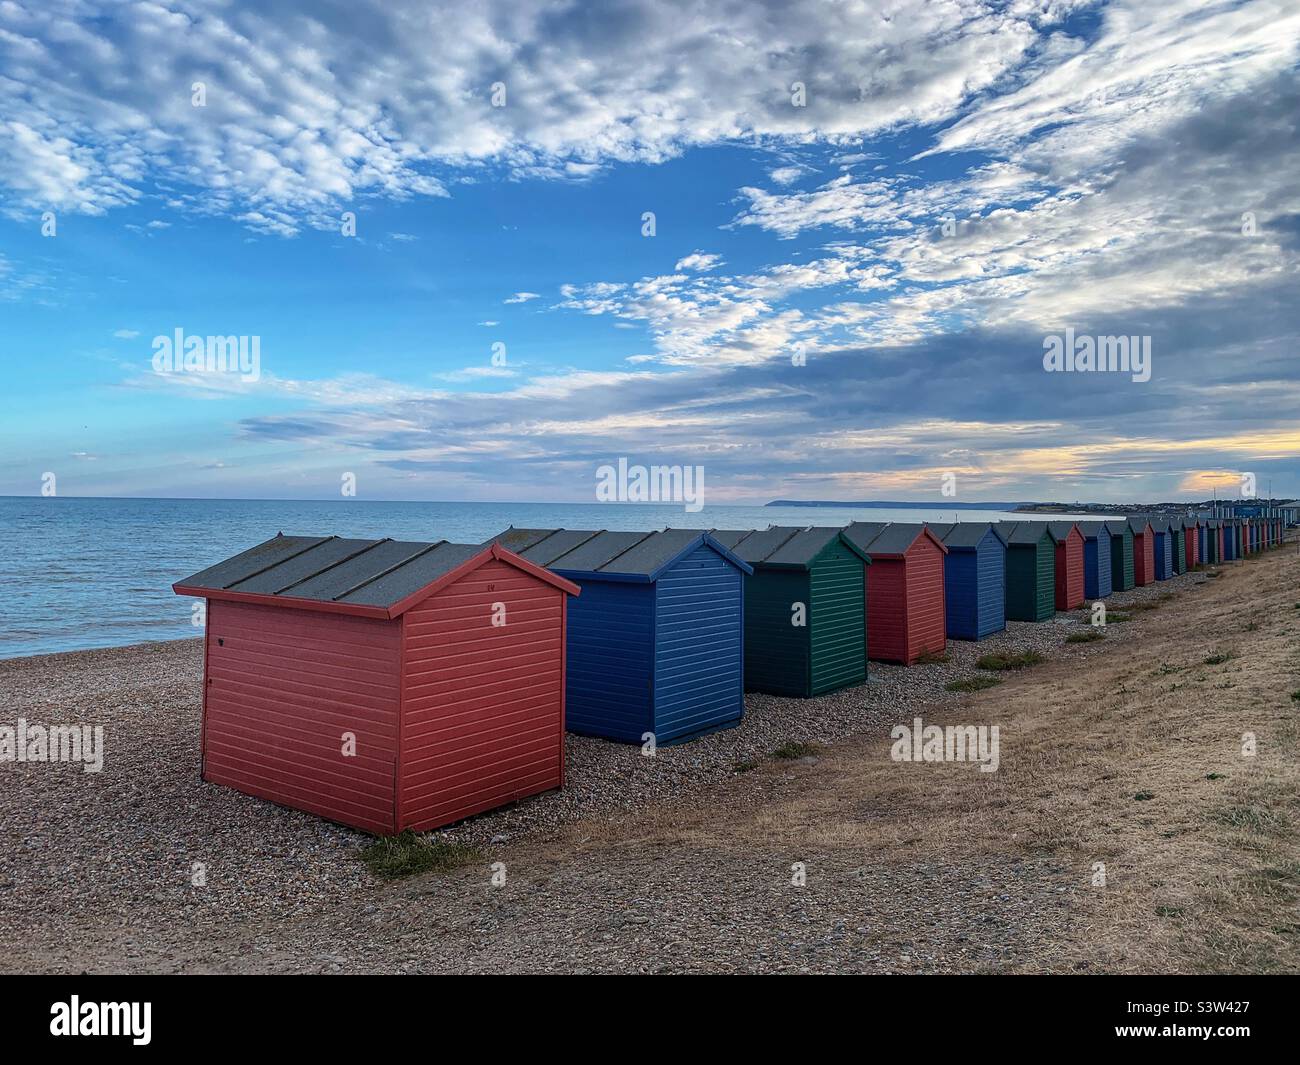 Beach huts on Hastings beach uk Stock Photo